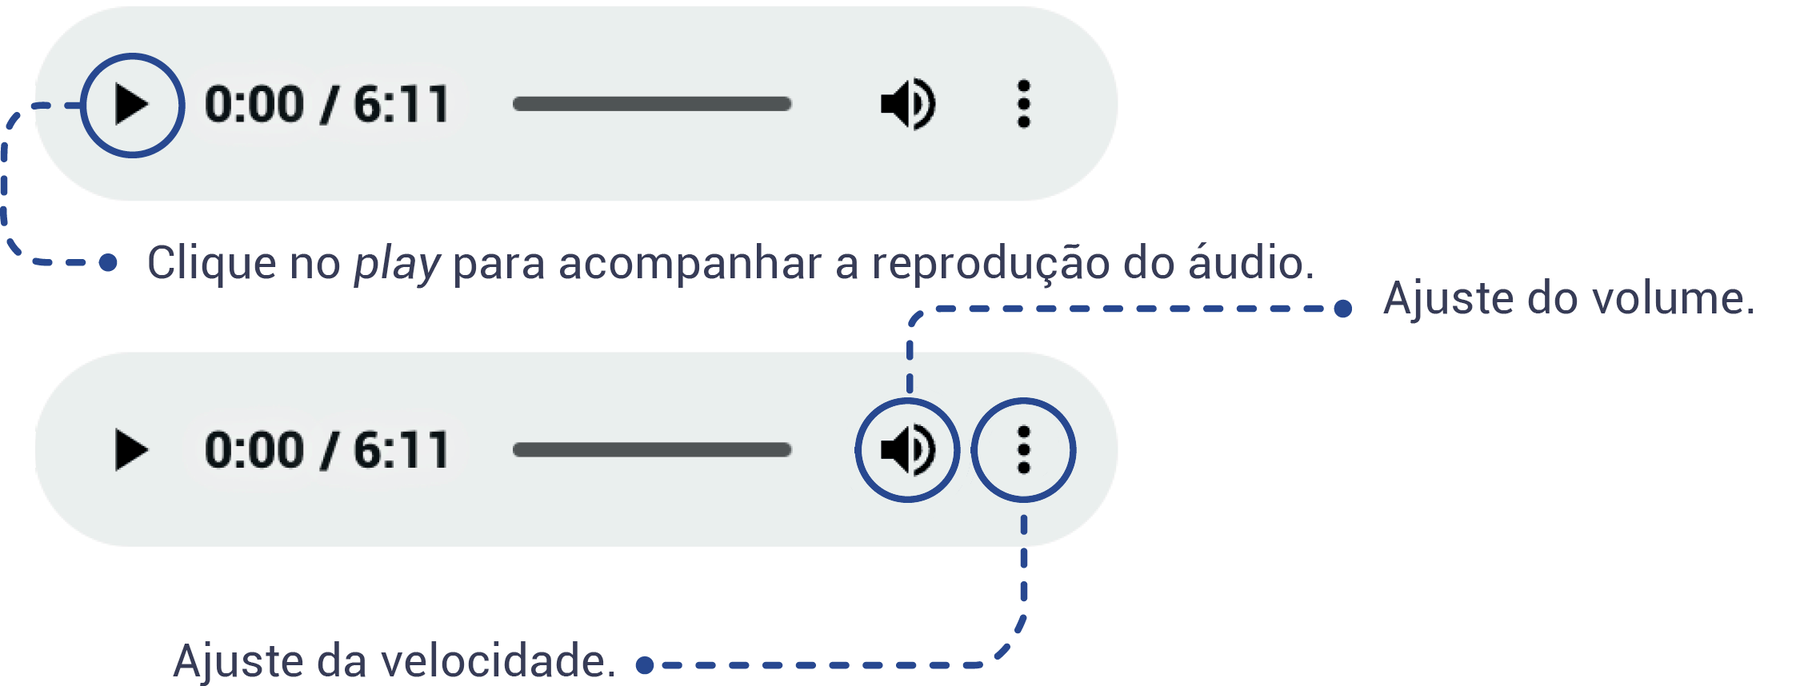 Esquema. Esquema mostrando como deve ser feita a navegação do objeto digital ÁUDIO, indicando que o ícone play deve ser clicado para acompanhar a reprodução do áudio, o ícone de som deve ser usado para o ajuste de volume e o ícone com três pontos alinhados verticalmente serve para o ajuste da velocidade do áudio.